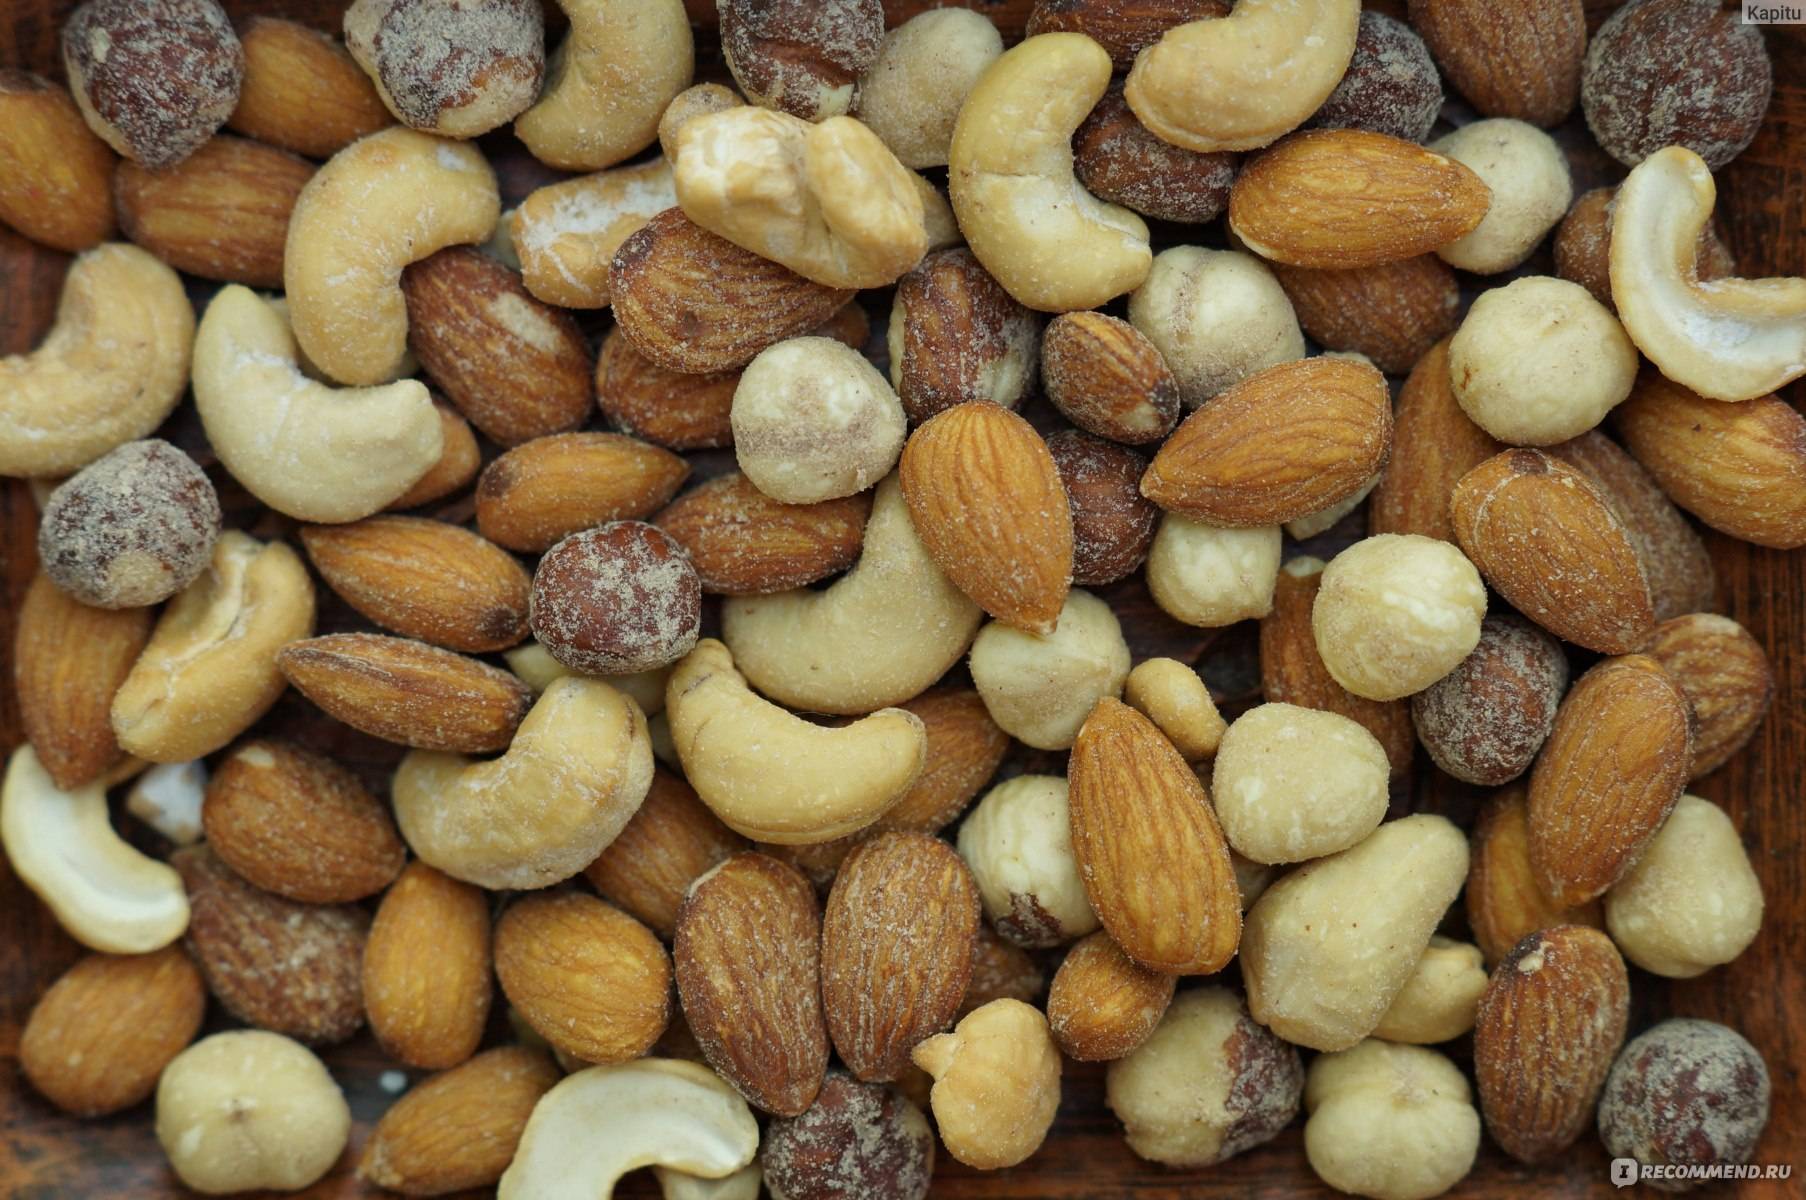 Орехи при гастрите: виды орехов при различных типах гастрита